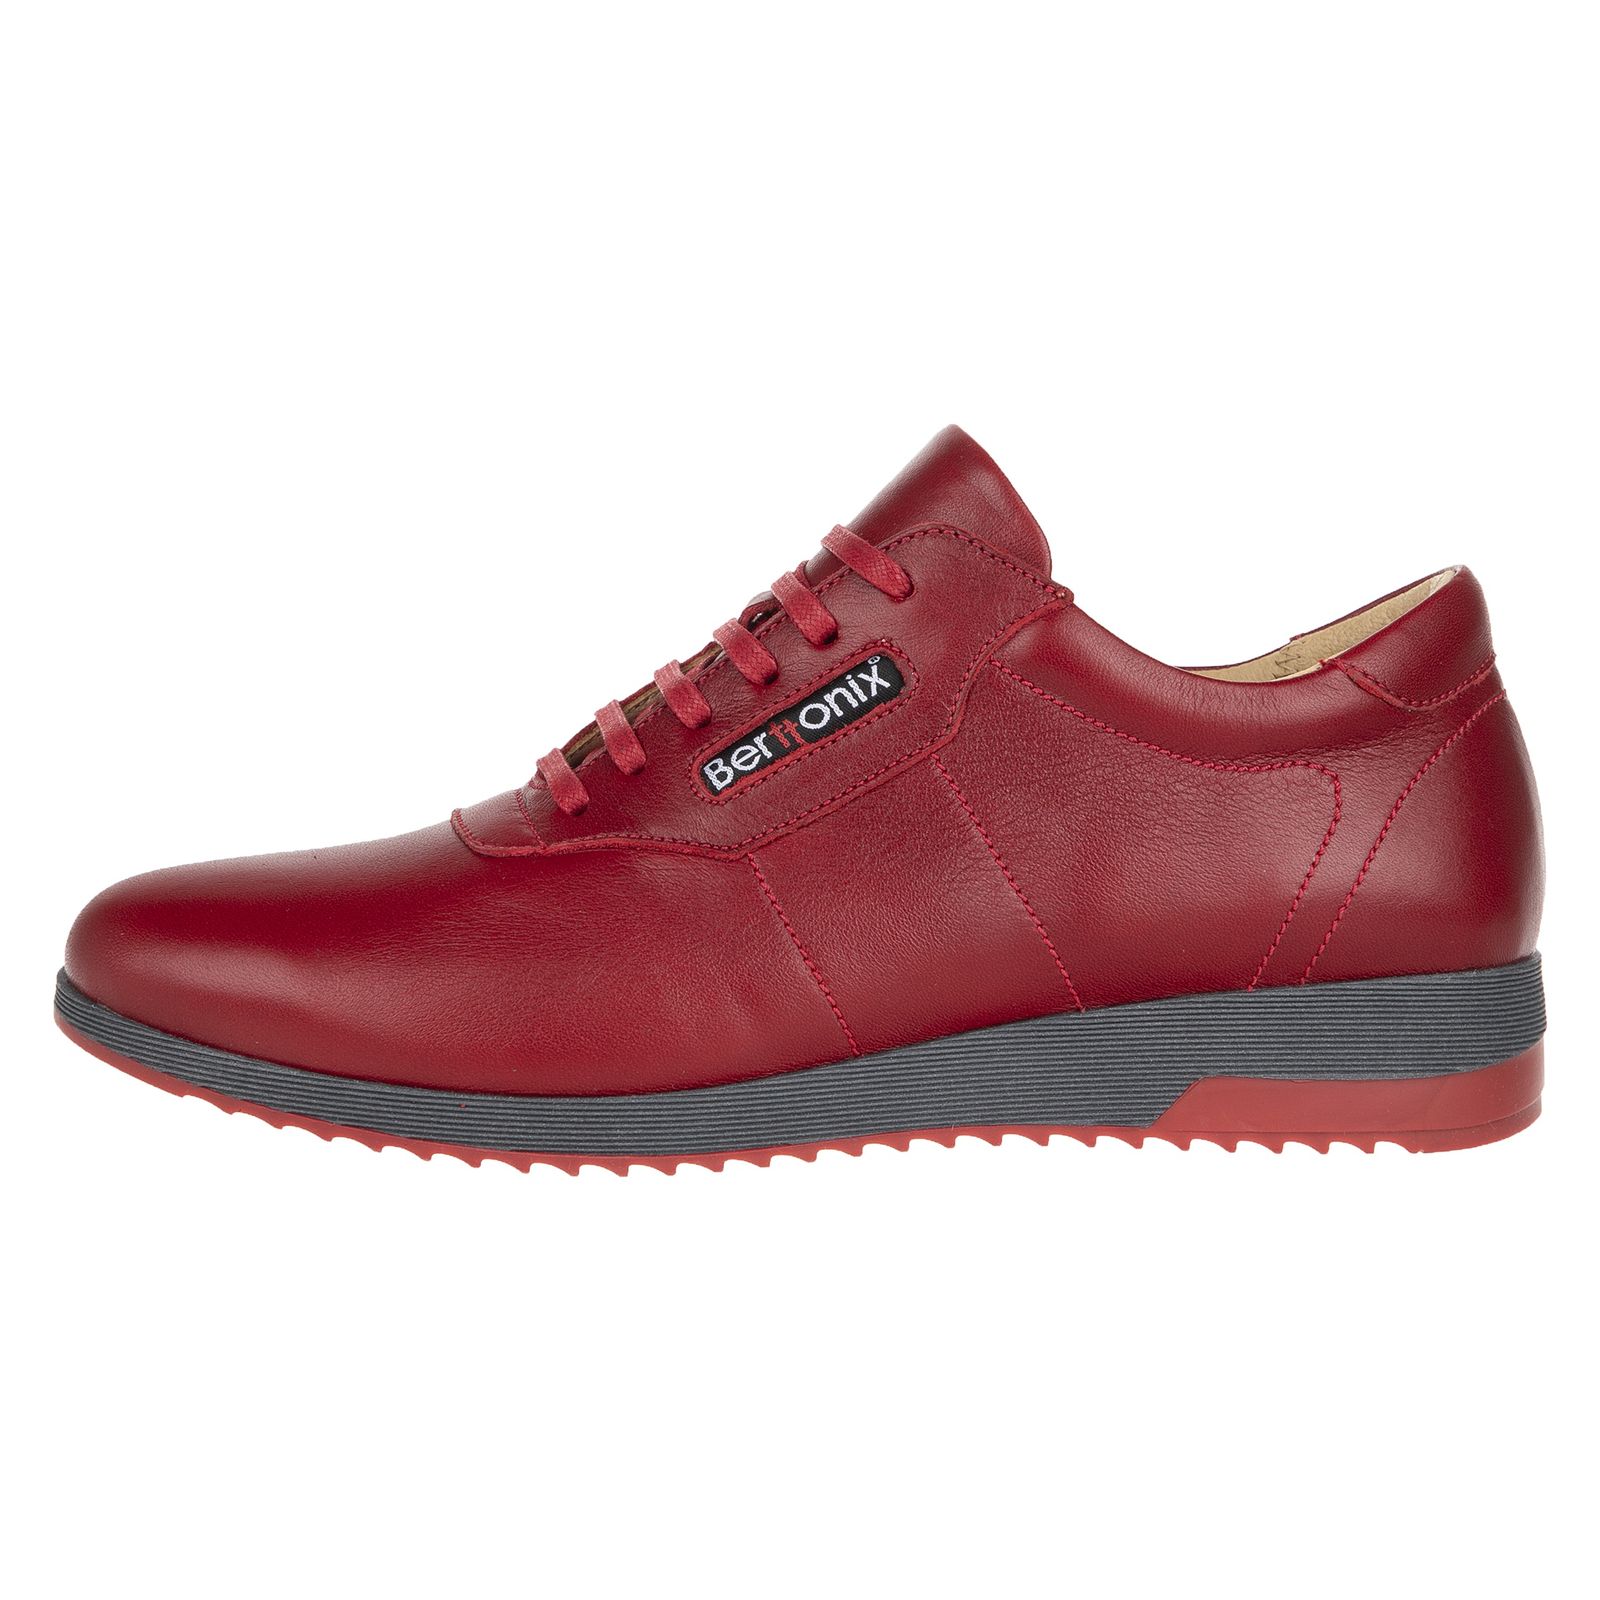 کفش روزمره زنانه برتونیکس مدل 730-24 - قرمز - 1